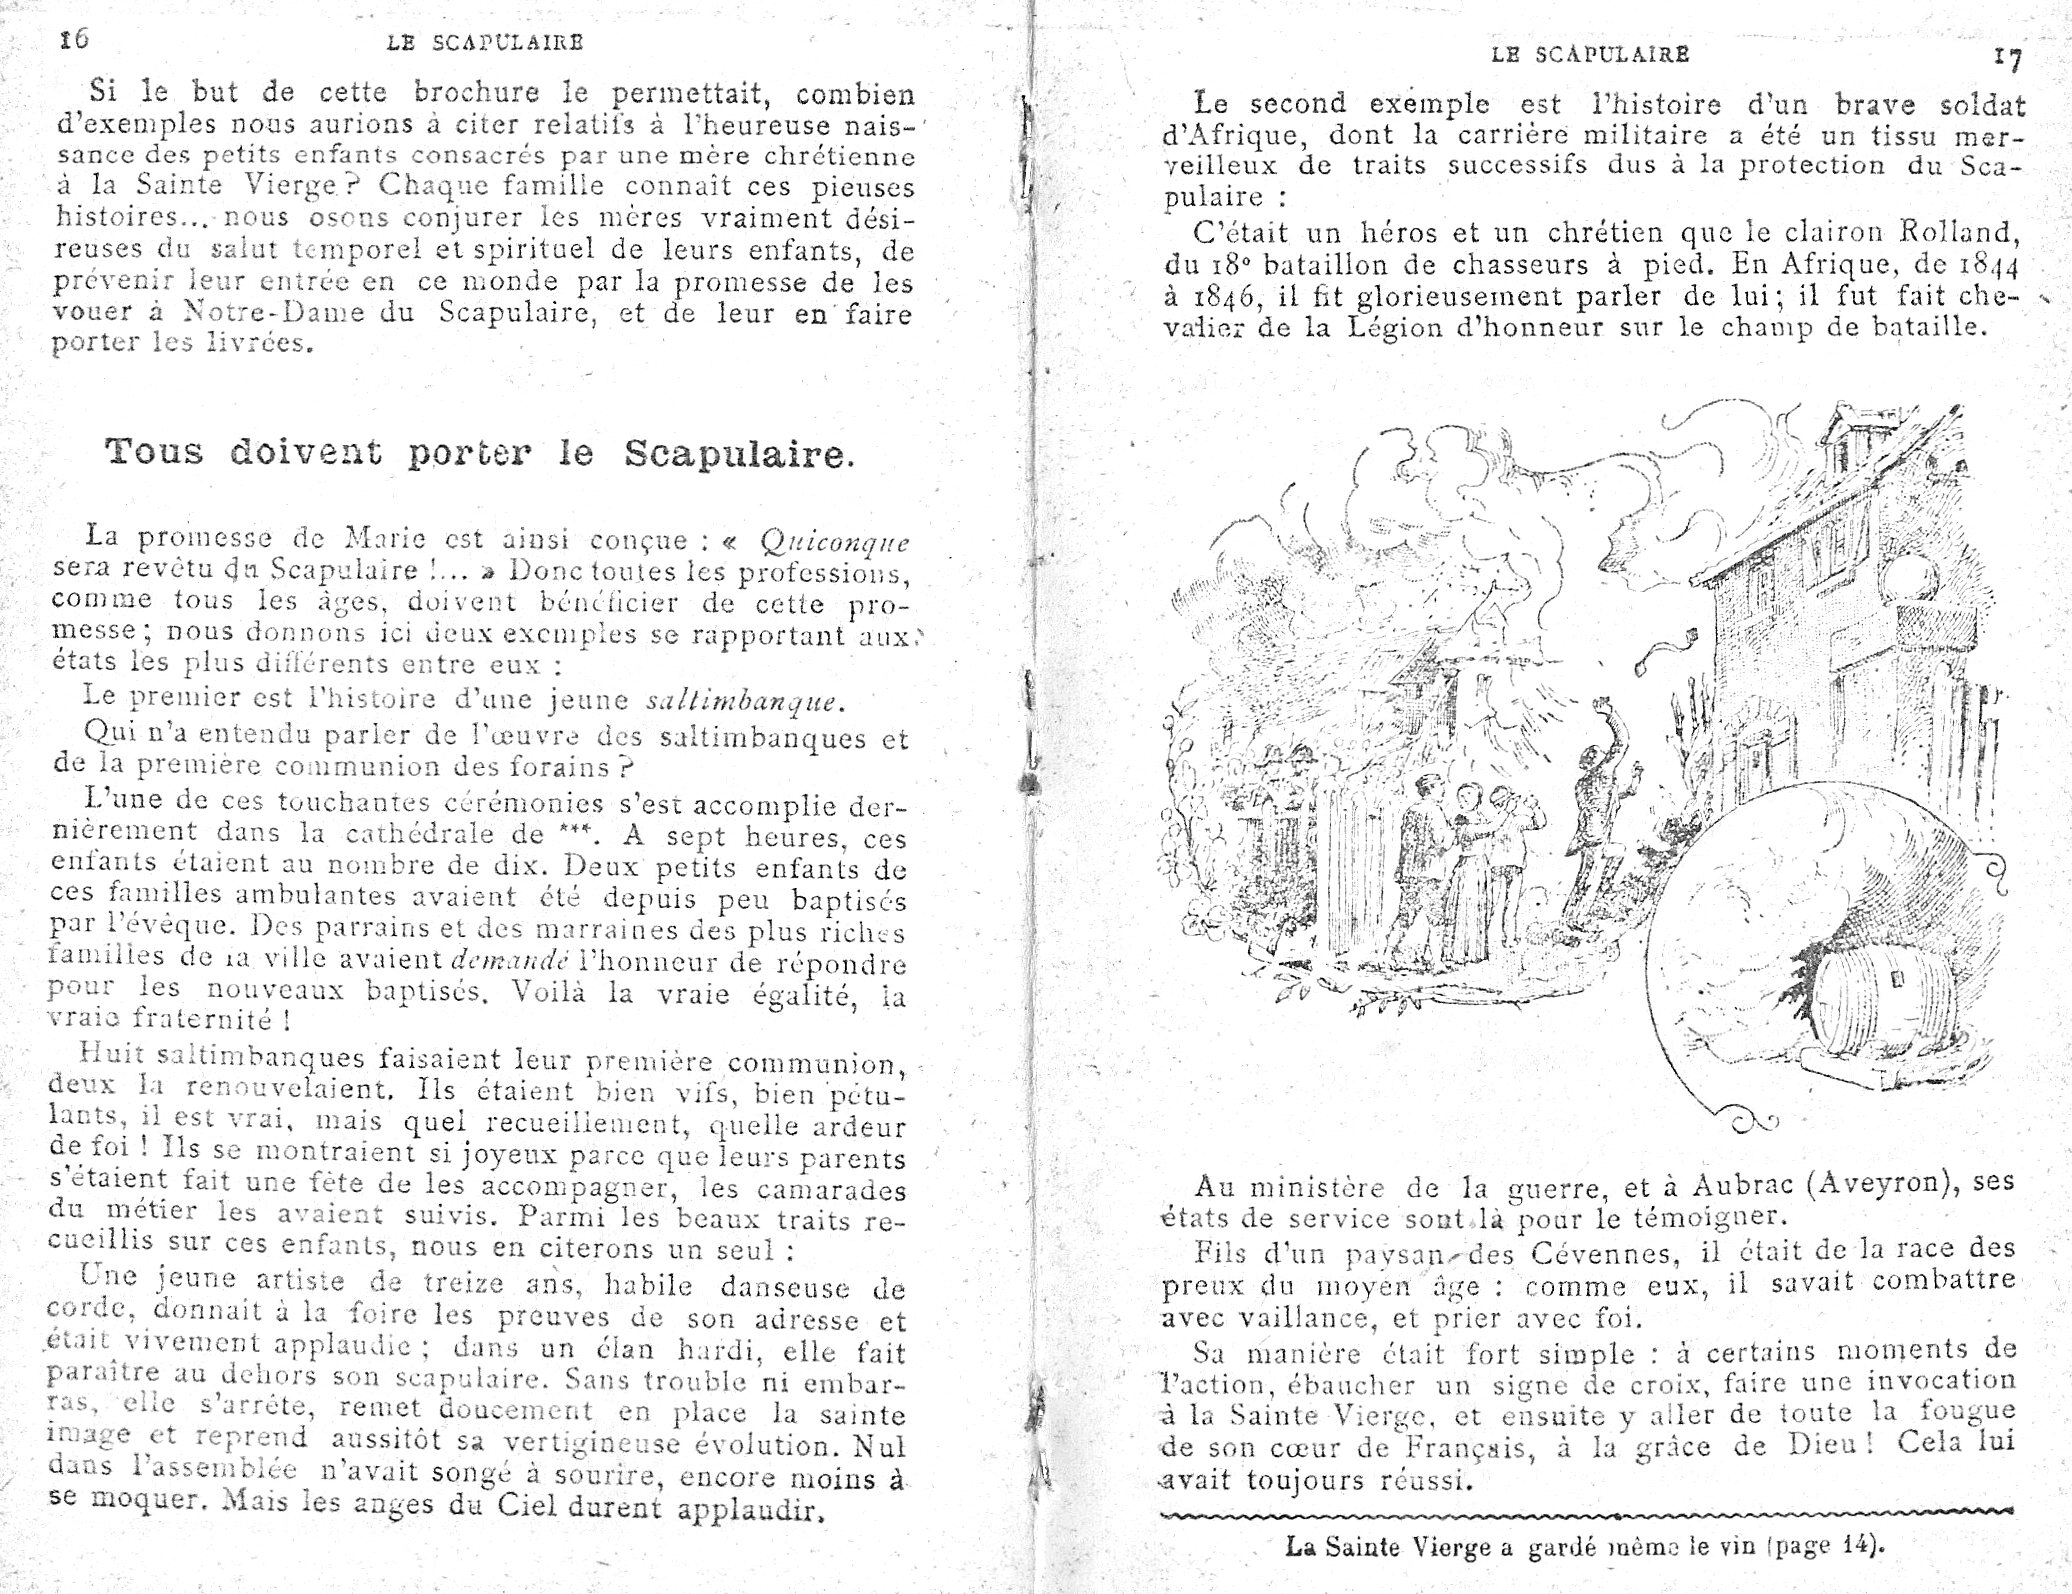 Histoires sur le Scapulaire de Notre-Dame du Mont-Carmel - Page 3 Le_sca18